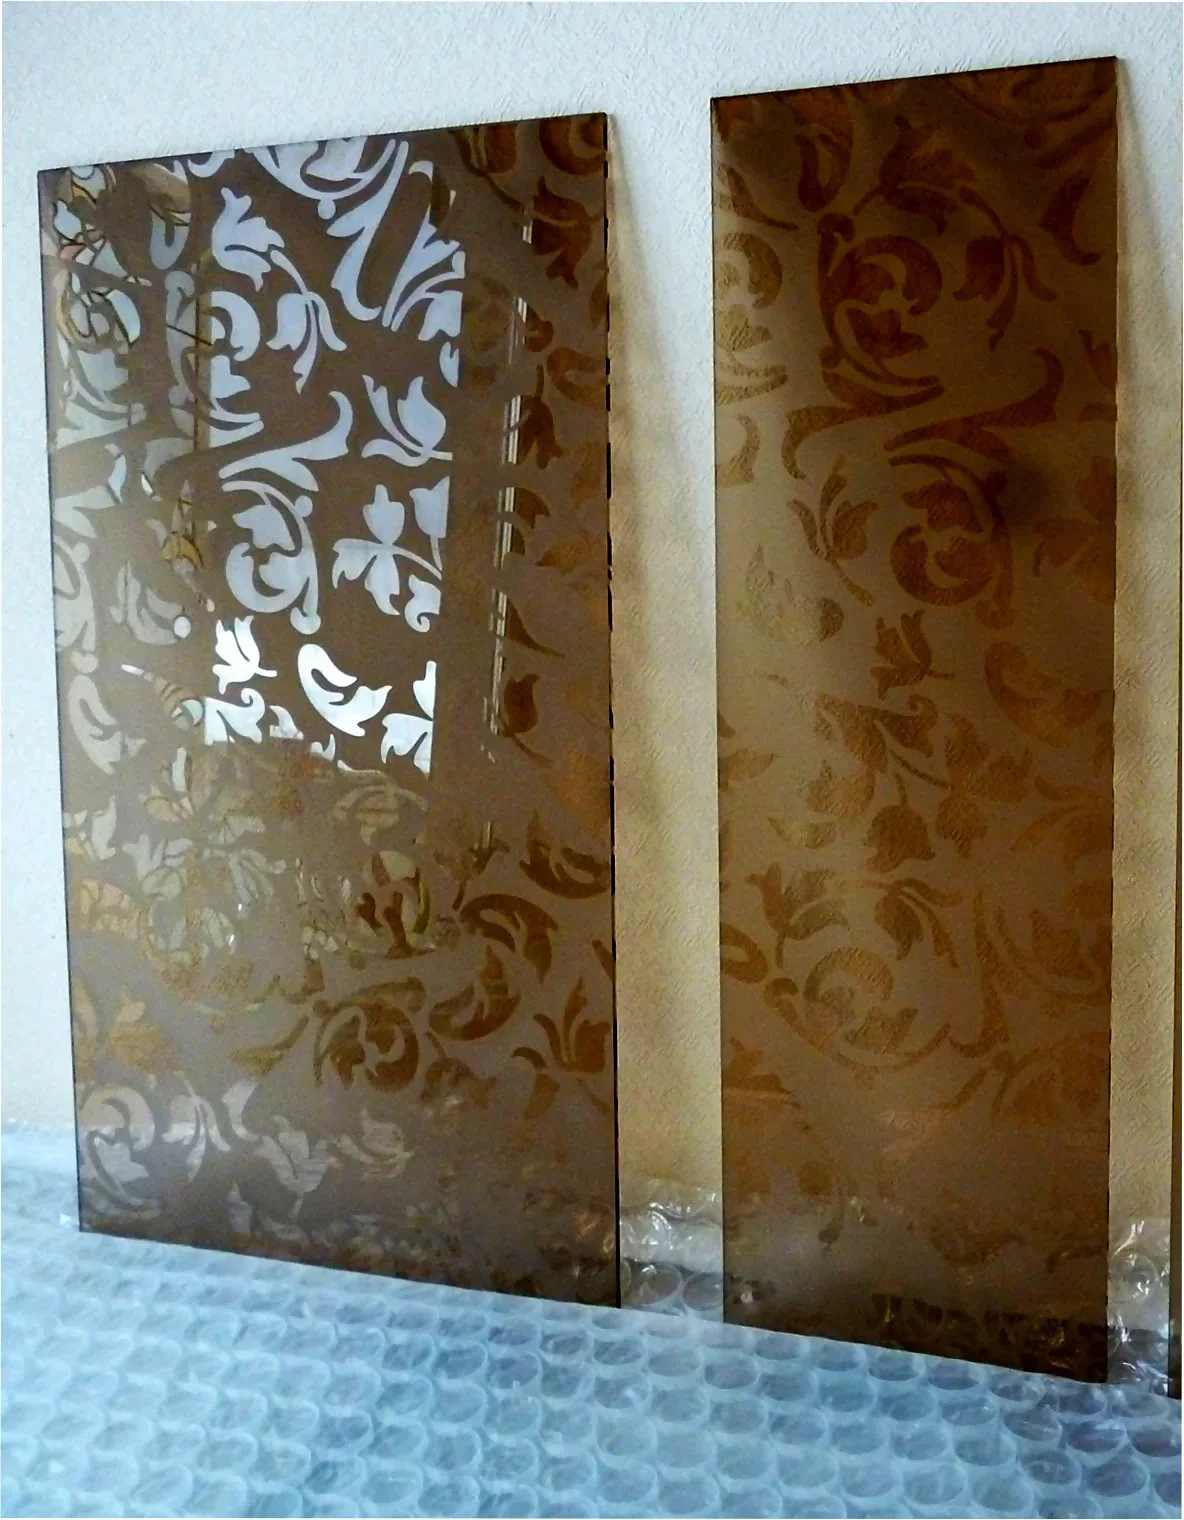 Красивое узорчатое стекло с цветочным рисунком, созданным с применением матирования